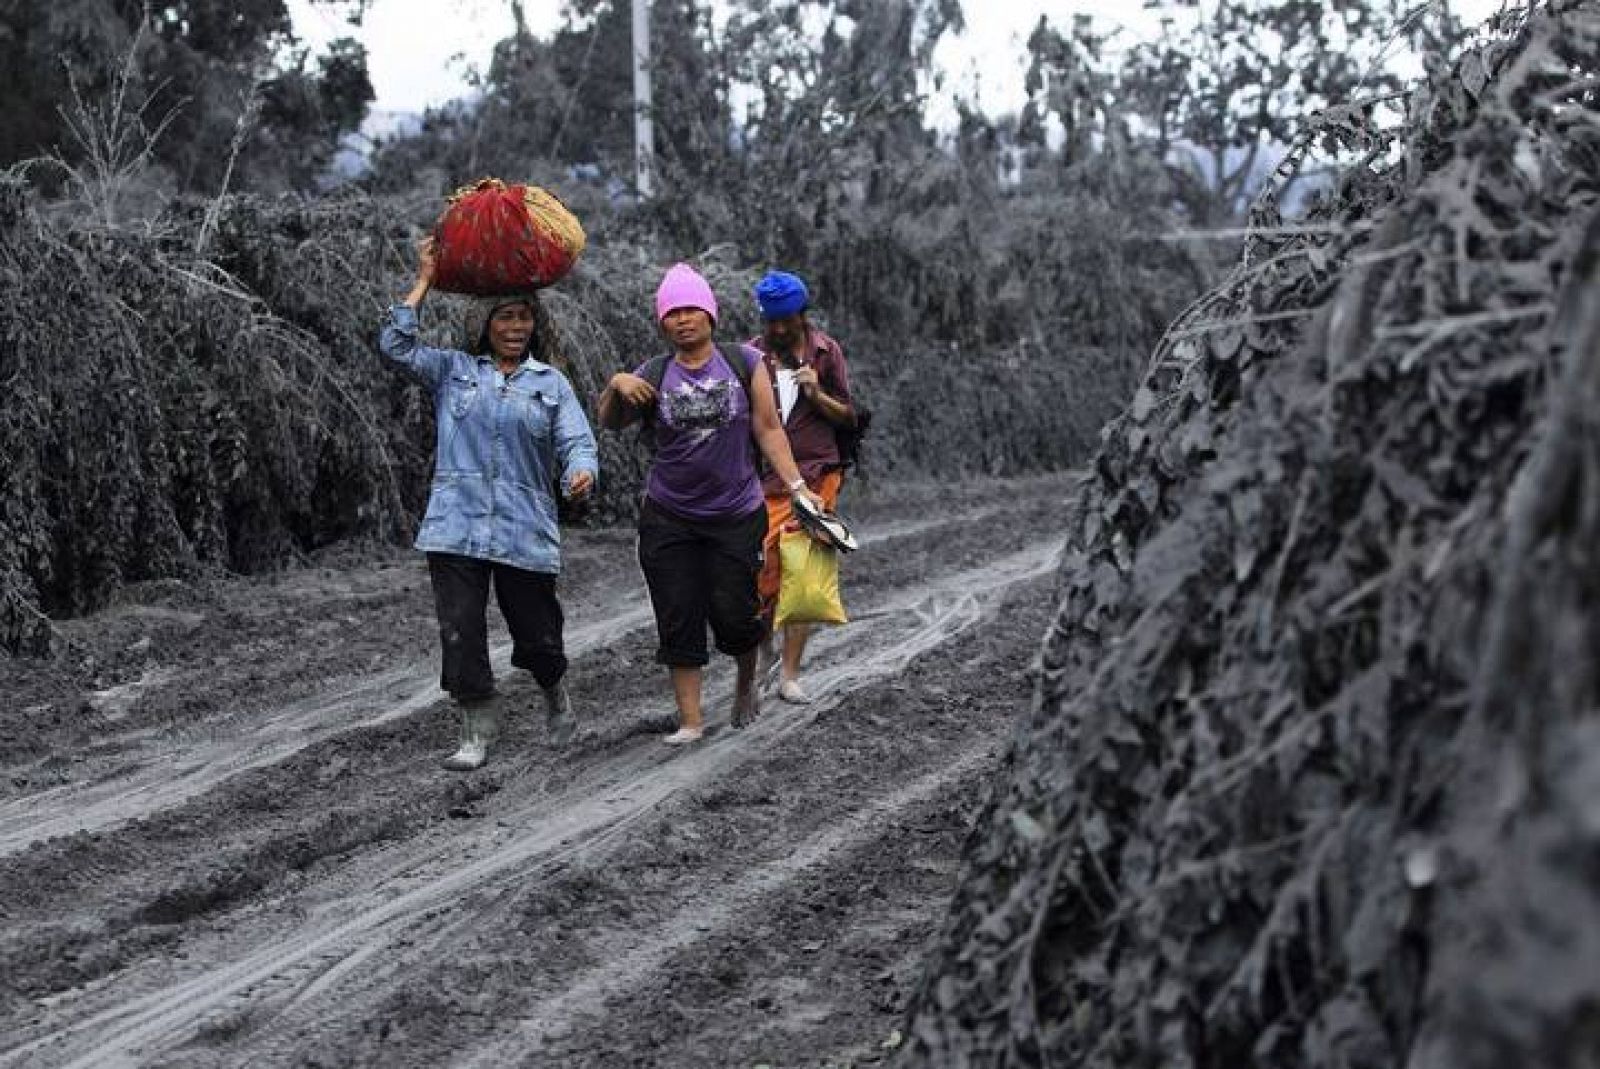 Miles de personas han tenido que abandonar sus poblaciones, que han quedado sepultadas por la ceniza tras la erupción del volcán Sinabung en Indonesia